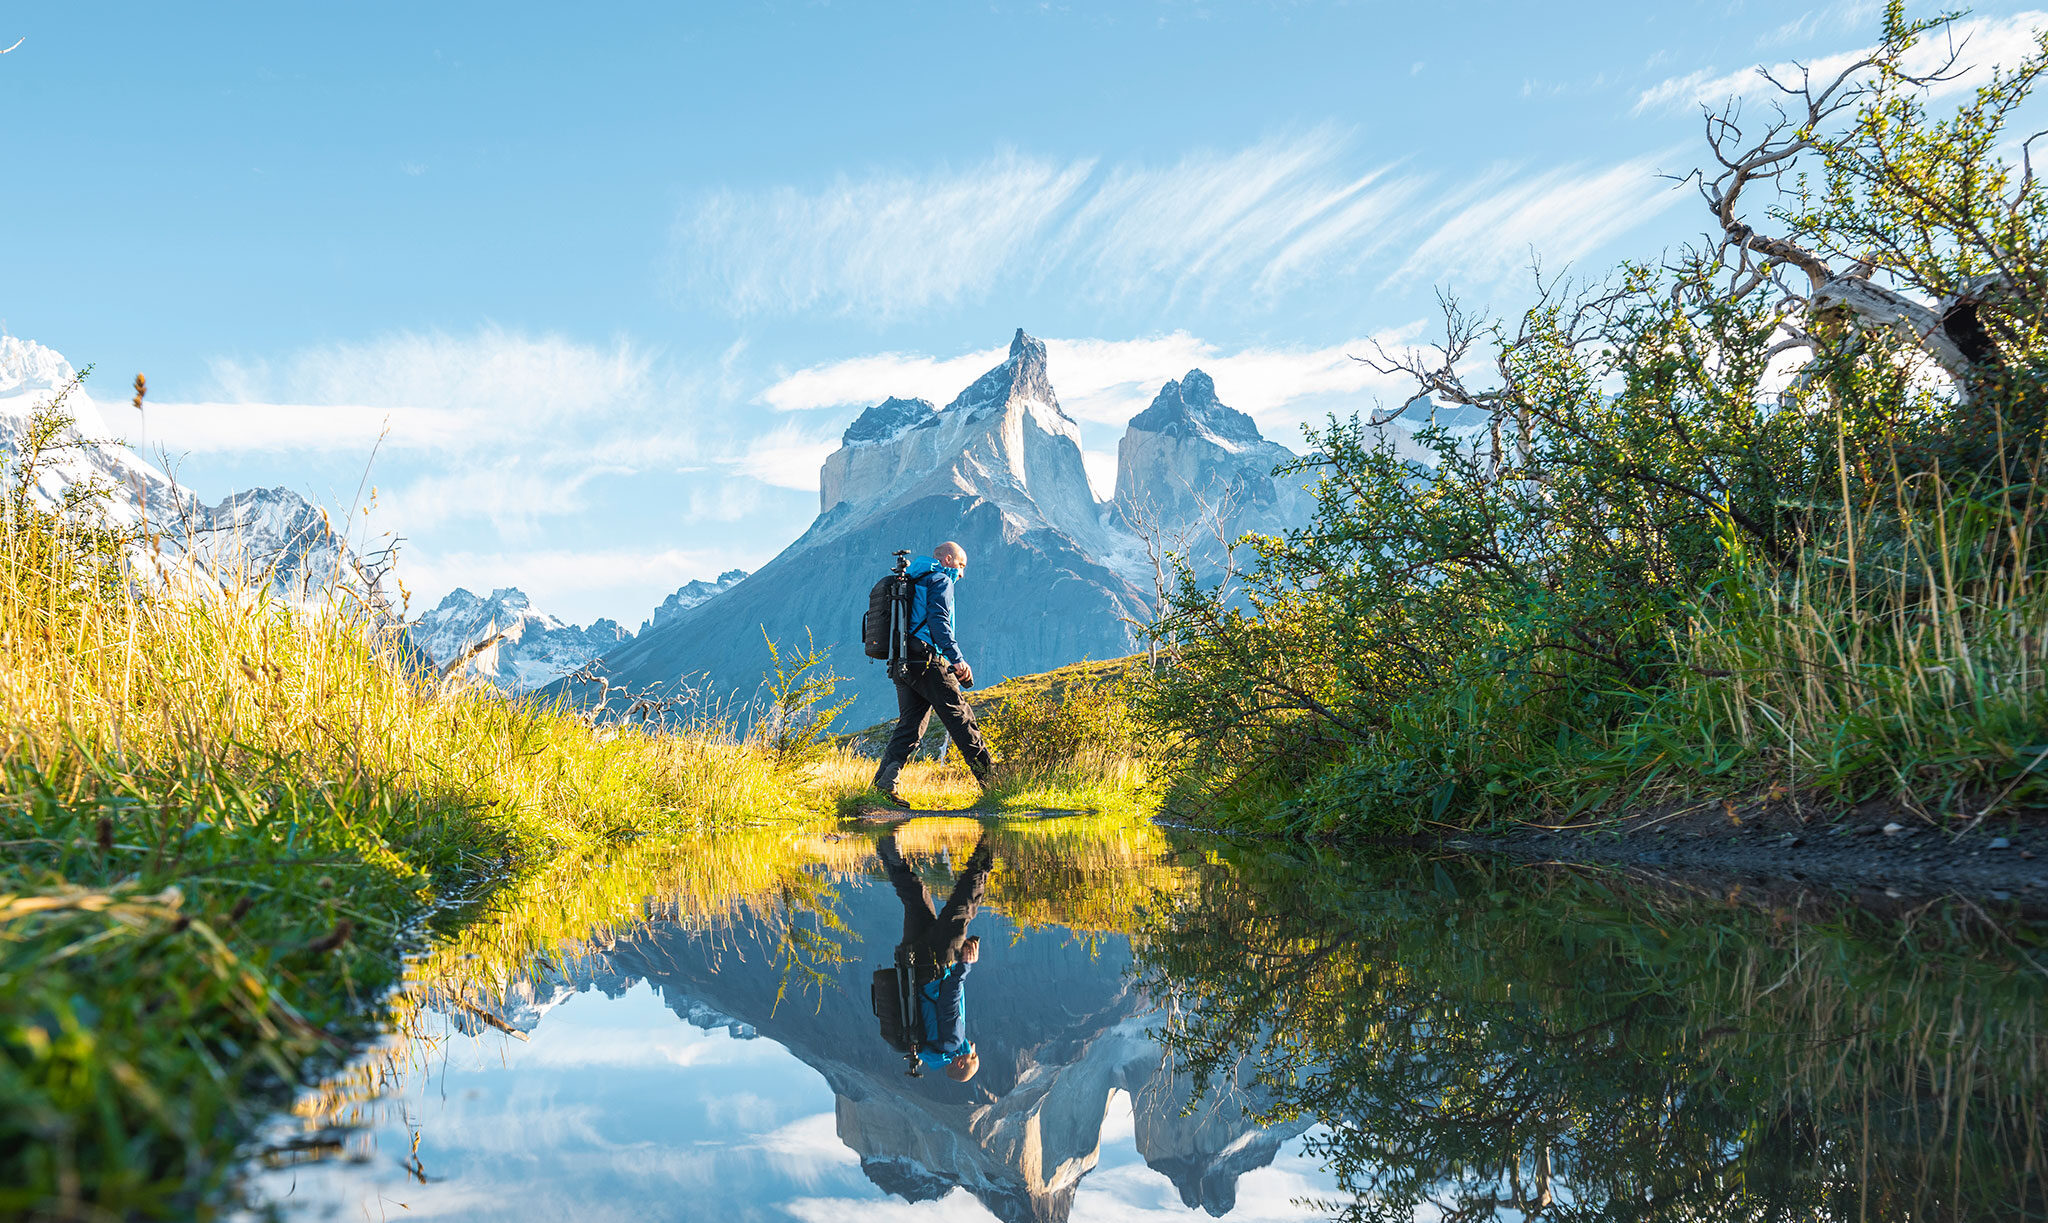 Un excursionista con equipo fotográfico cruza un estanque mientras a lo lejos se alzan afilados picos montañosos.